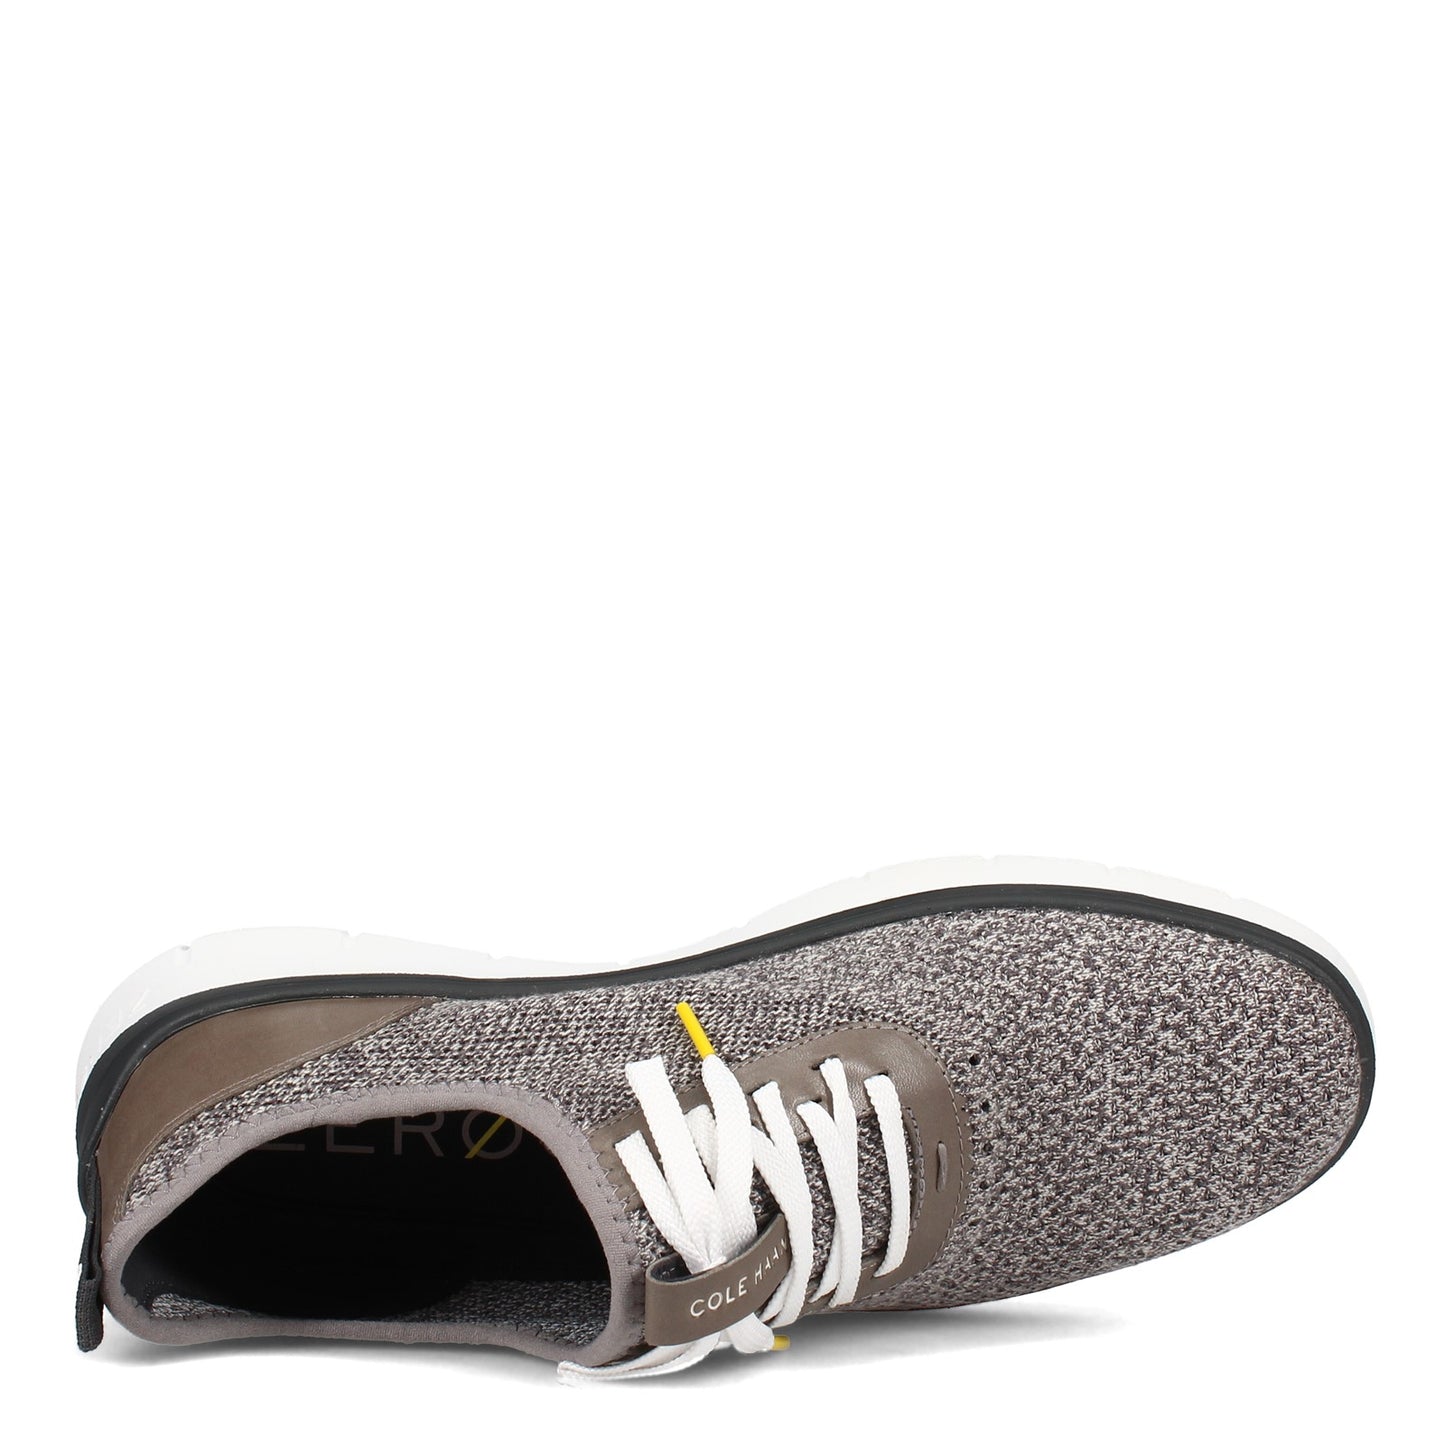 Peltz Shoes  Men's Cole Haan Generation ZEROGRAND Oxford GLACIER C31405